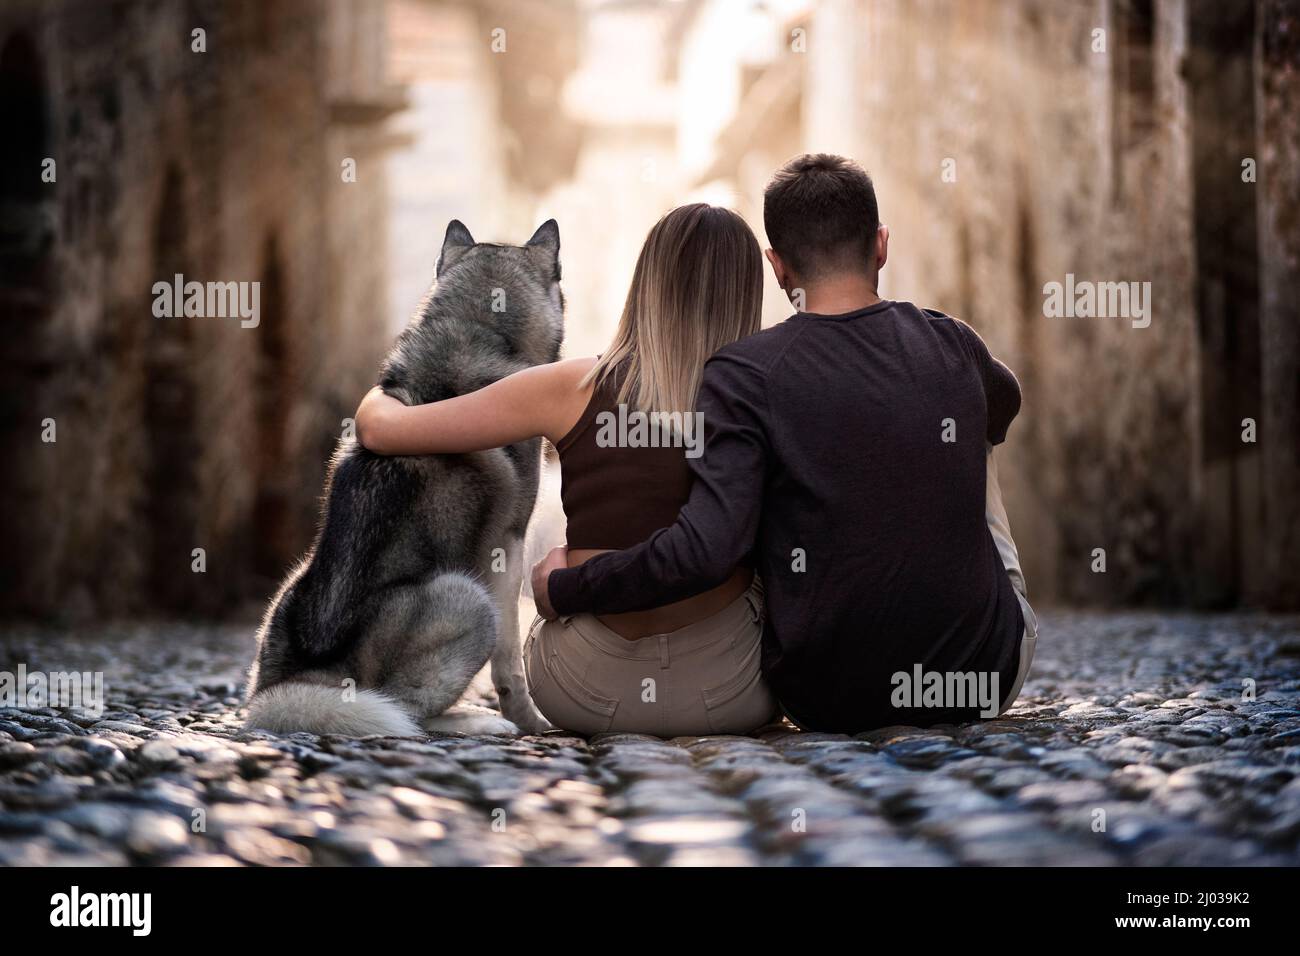 Vista trasera de dos jóvenes y su querido perro lobo sentado y abrazando en una calle del casco antiguo mirando al sol, Piemonte, Italia, Europa Foto de stock